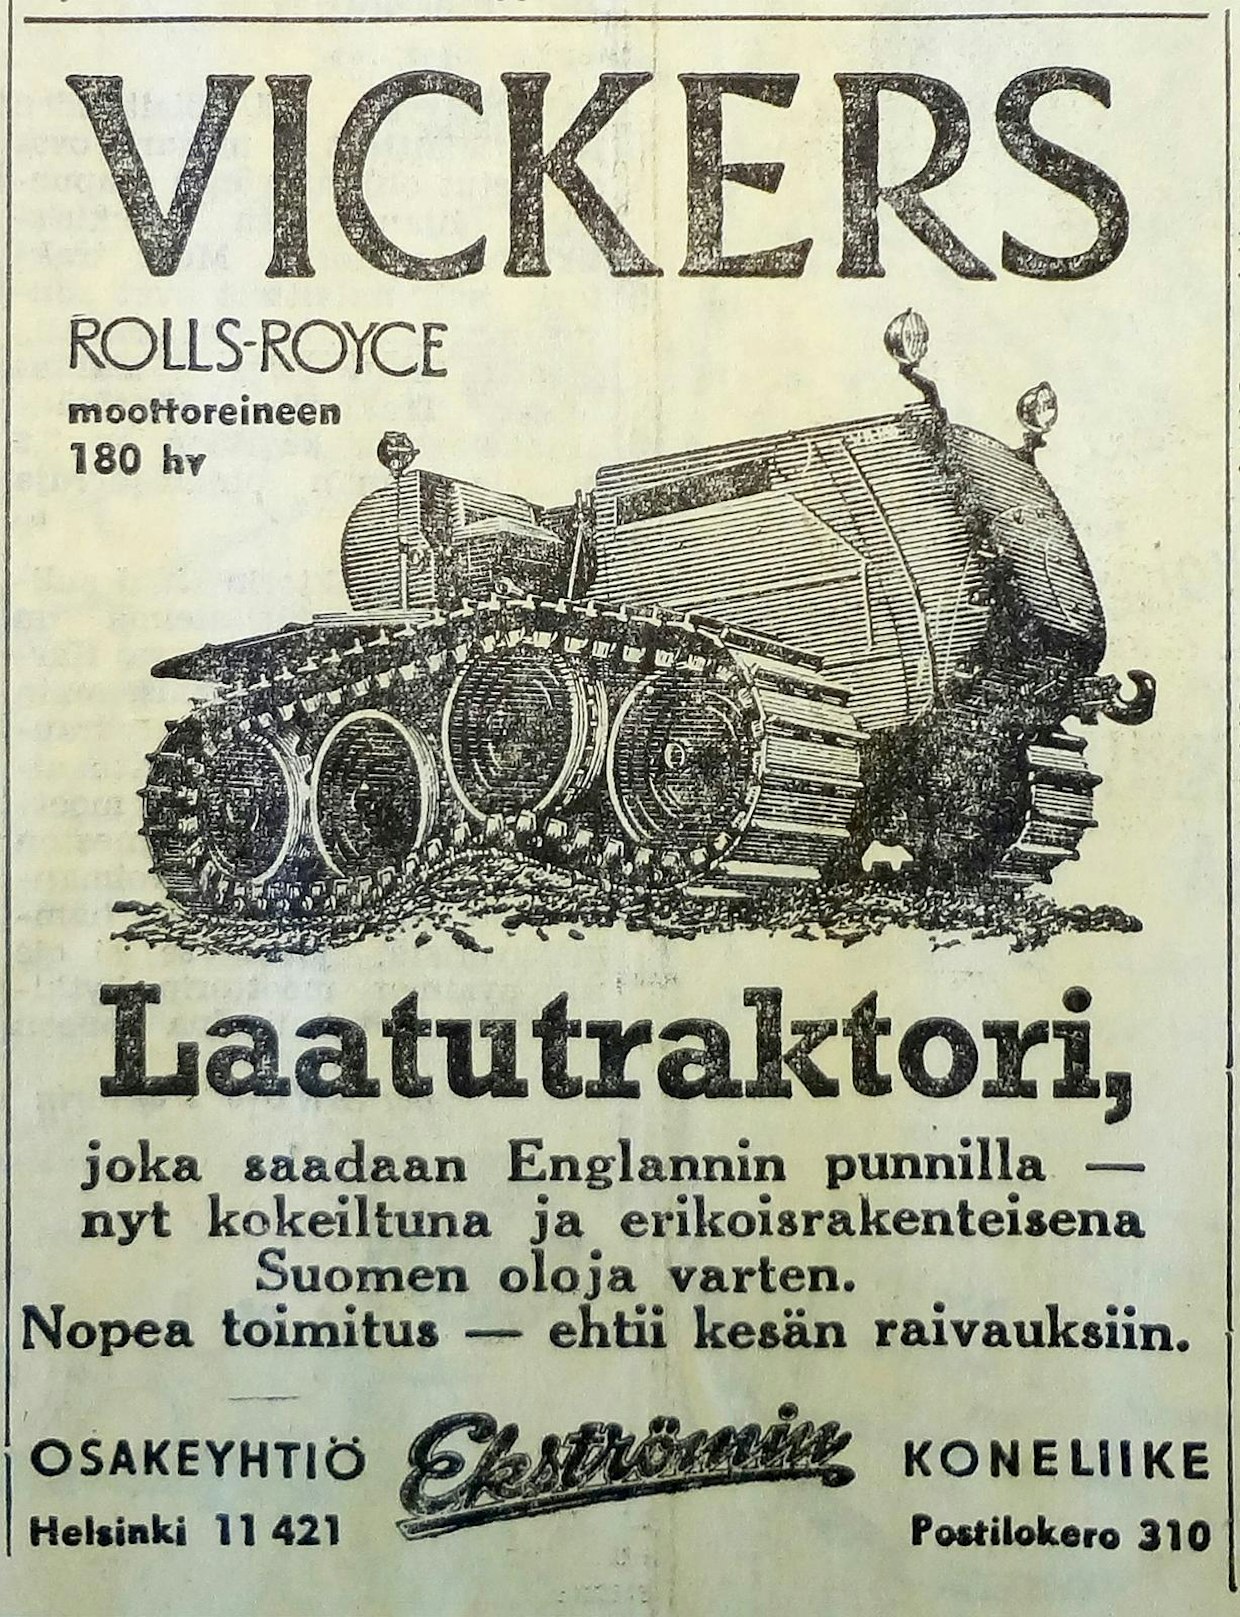 Brittiläinen koneteollisuus on tuottanut myös monia hyvin erikoisia koneita. Vickers-telatraktoreita tuli 1950-luvun puolivälissä Suomeen useita kappaleita (ilmoitus Maaseudun Koneviestissä 11/1955). Tätä traktorimallia ei valitettavasti päästä näkemään ainakaan tämänkertaisessa Rauta ja Petroolissa.